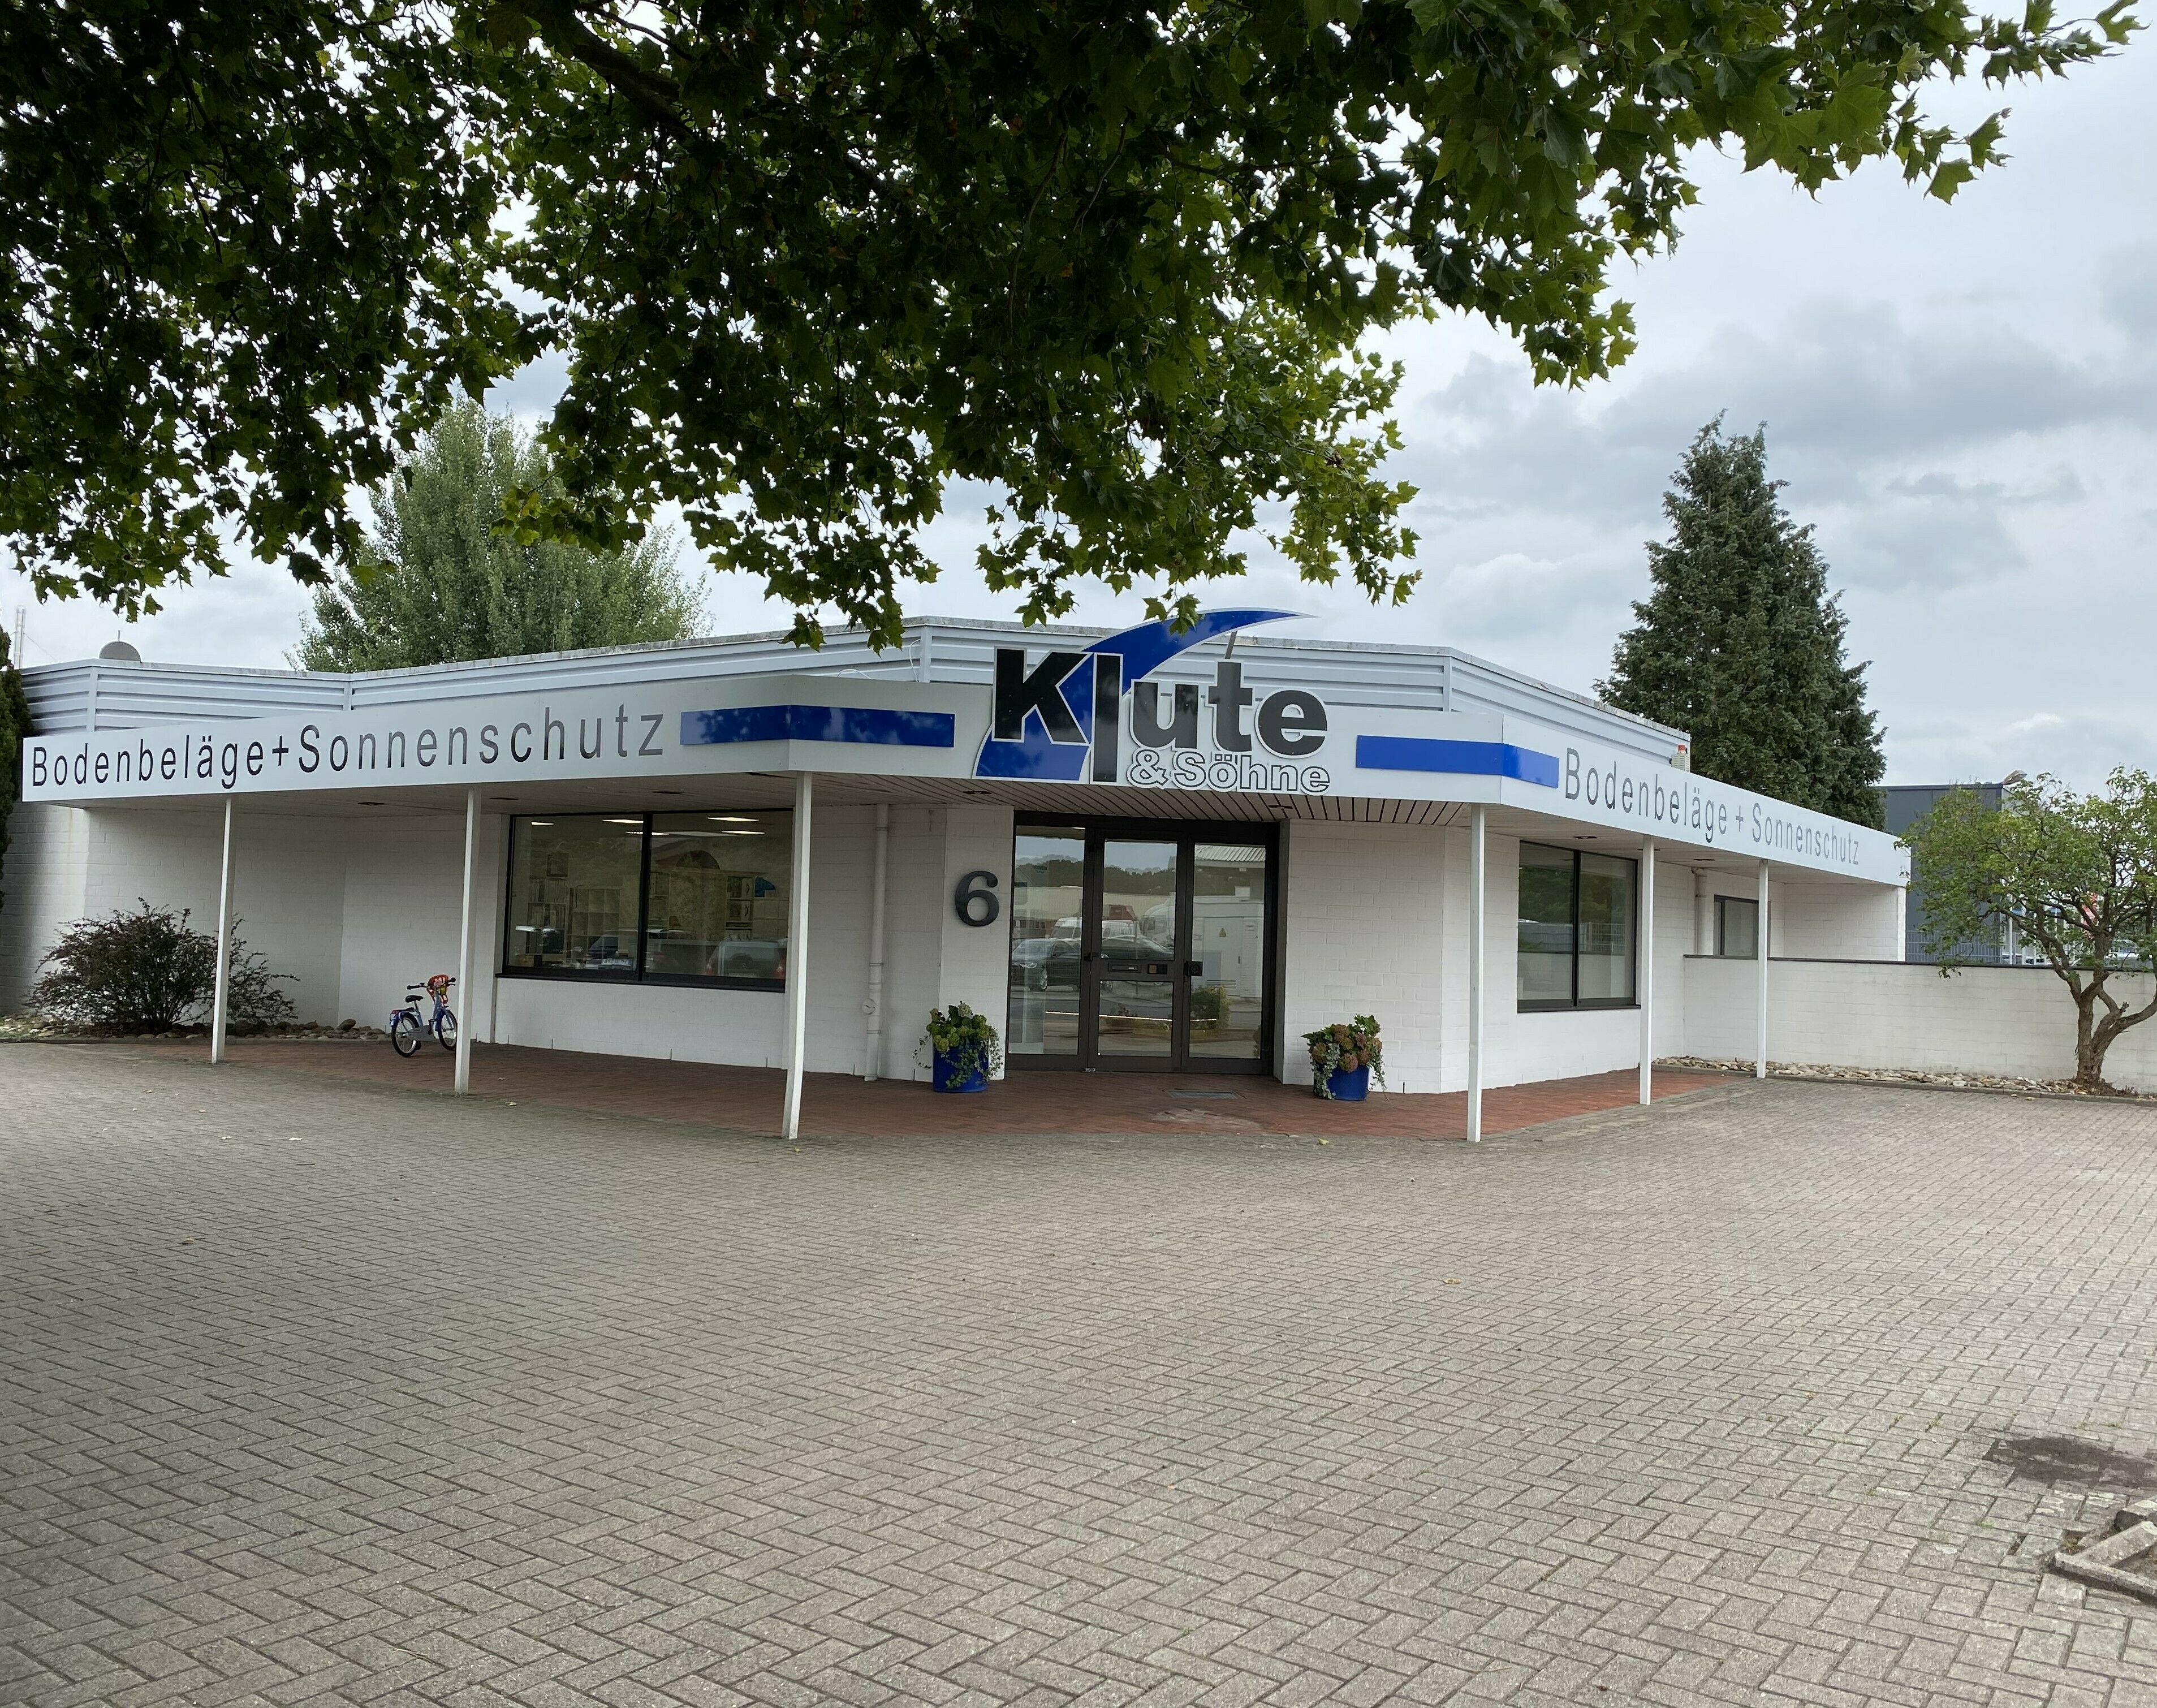 Klute & Söhne GmbH & Co. KG